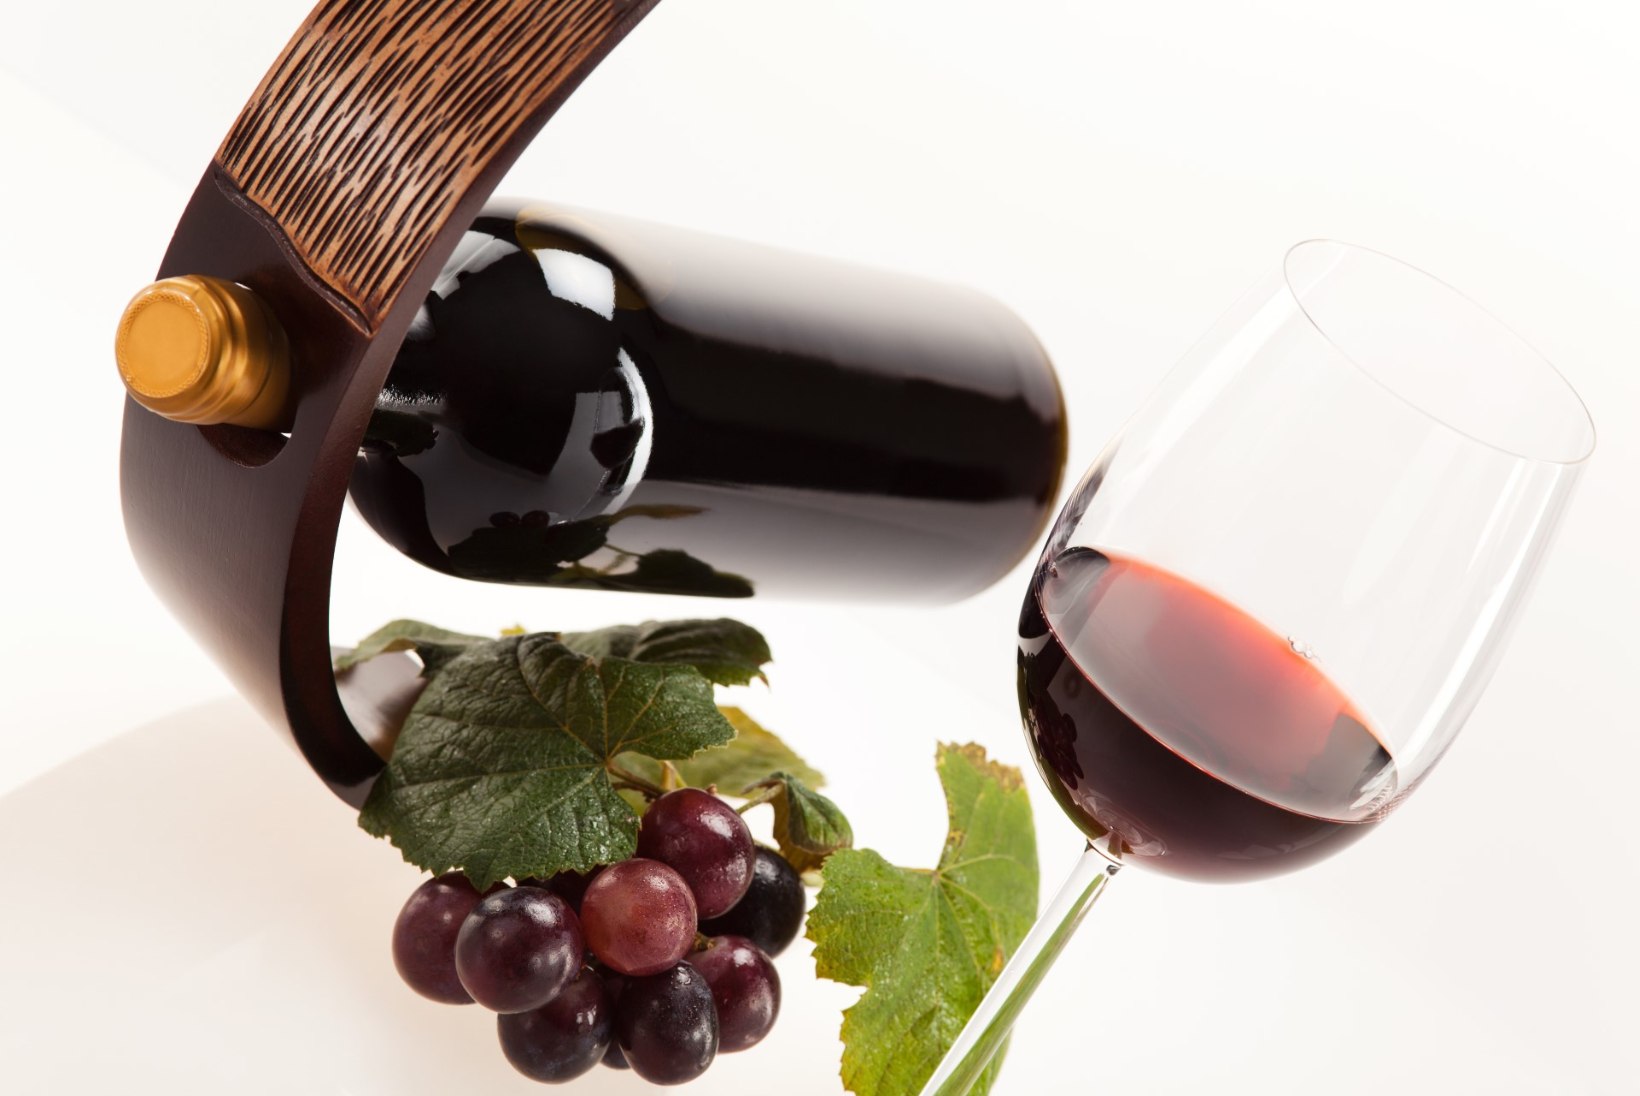 MIGREEN VÕI POHMELL: On see peavalu tõesti punasest veinist?